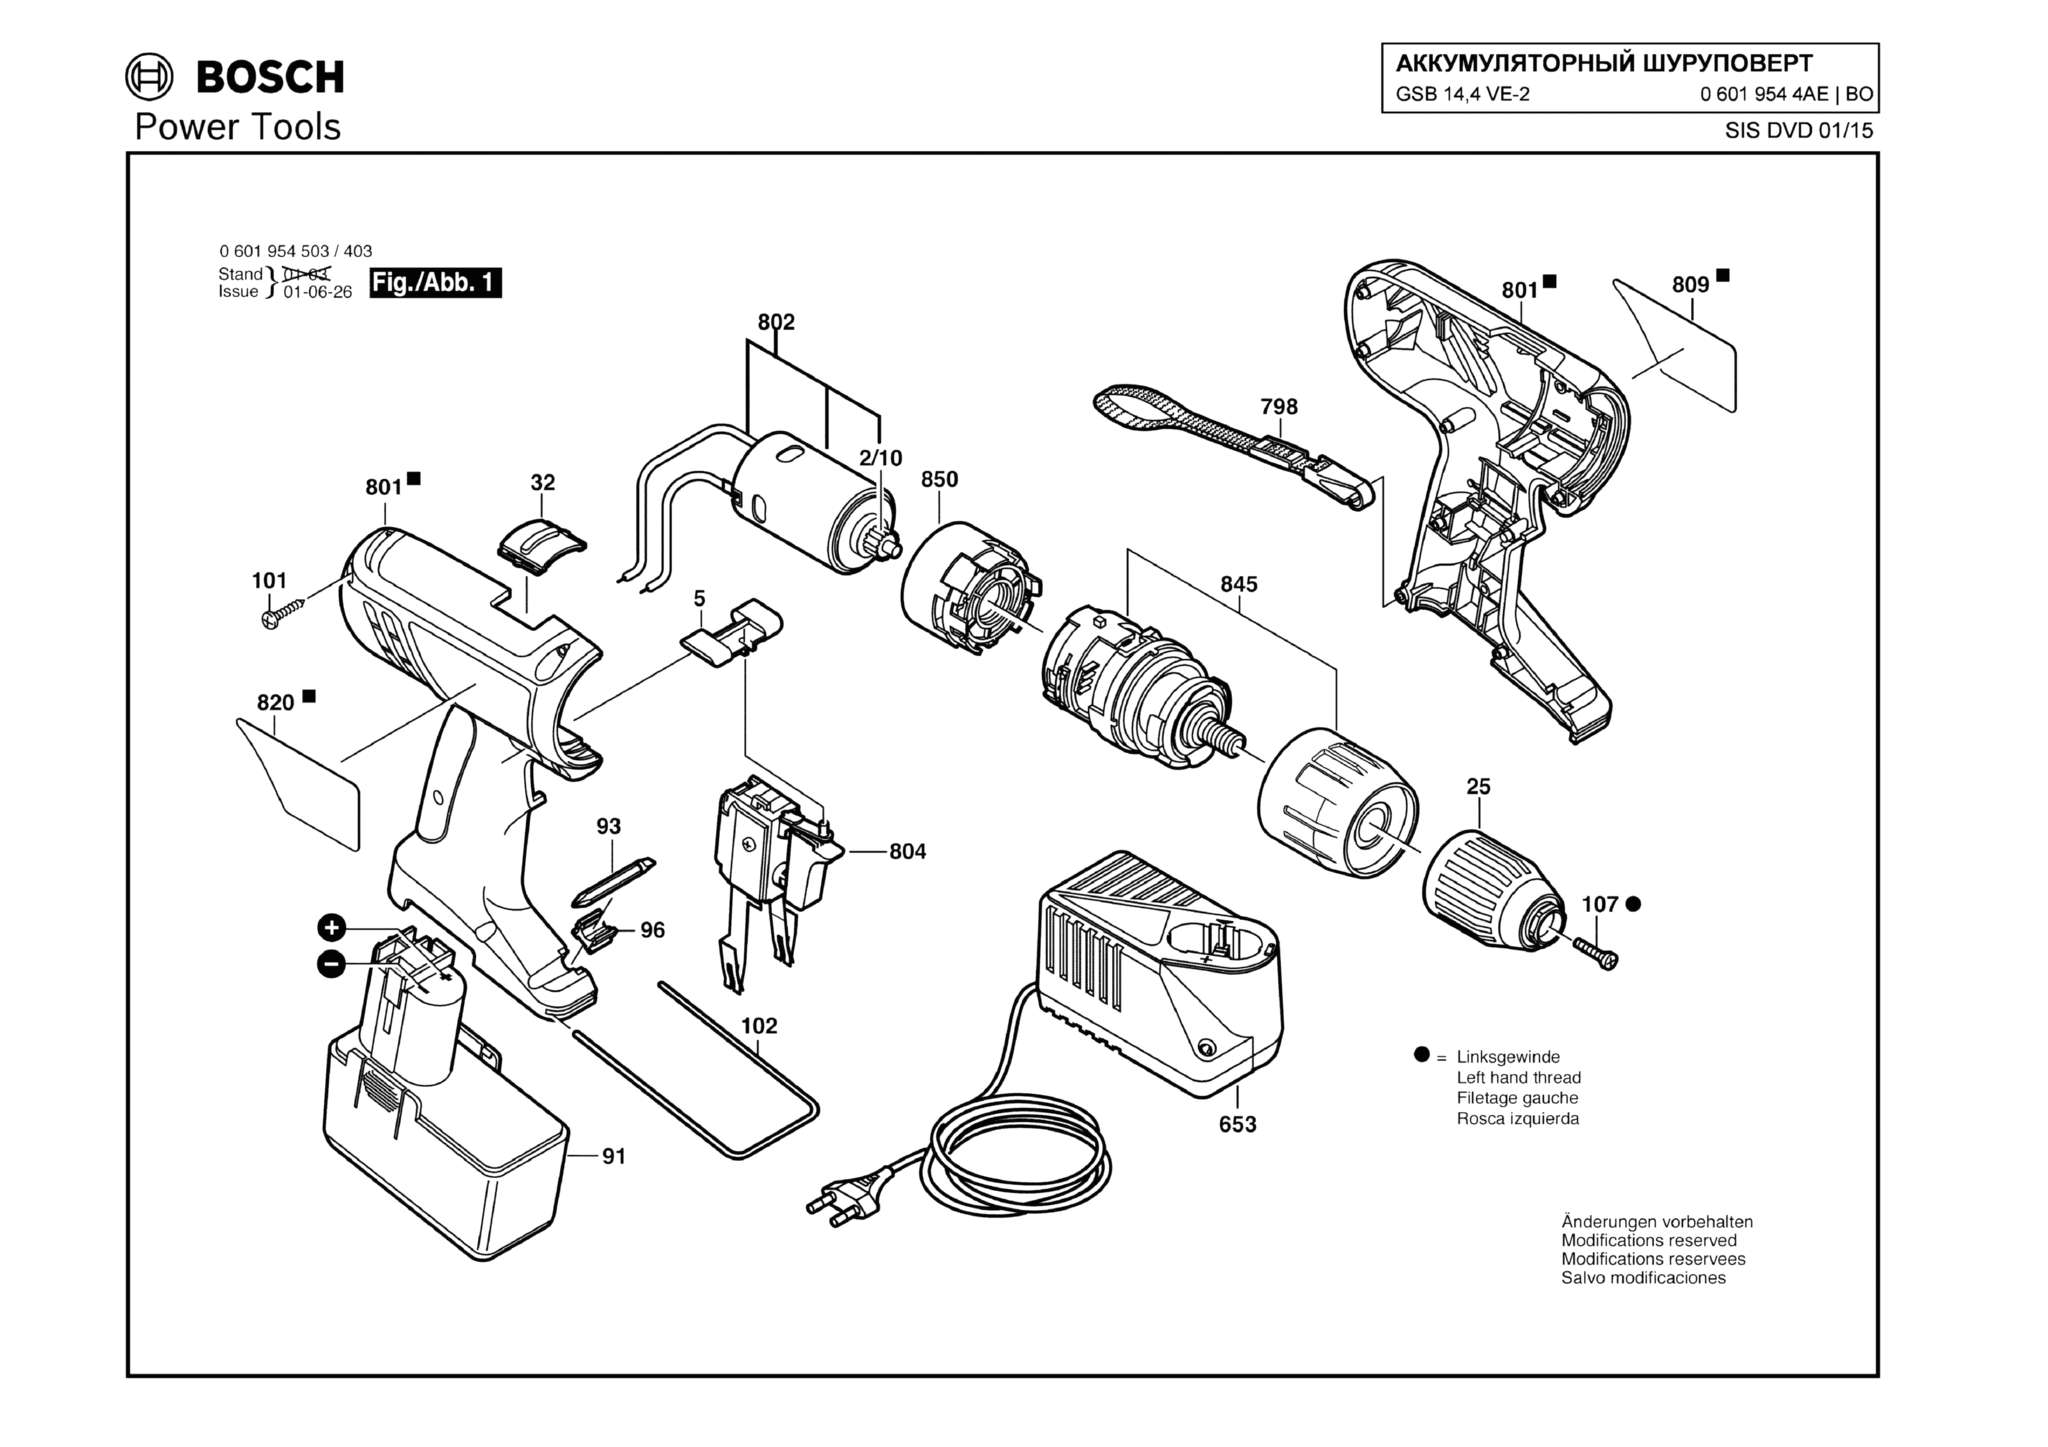 Запчасти, схема и деталировка Bosch GSB 14,4 VE-2 (ТИП 06019544AE)